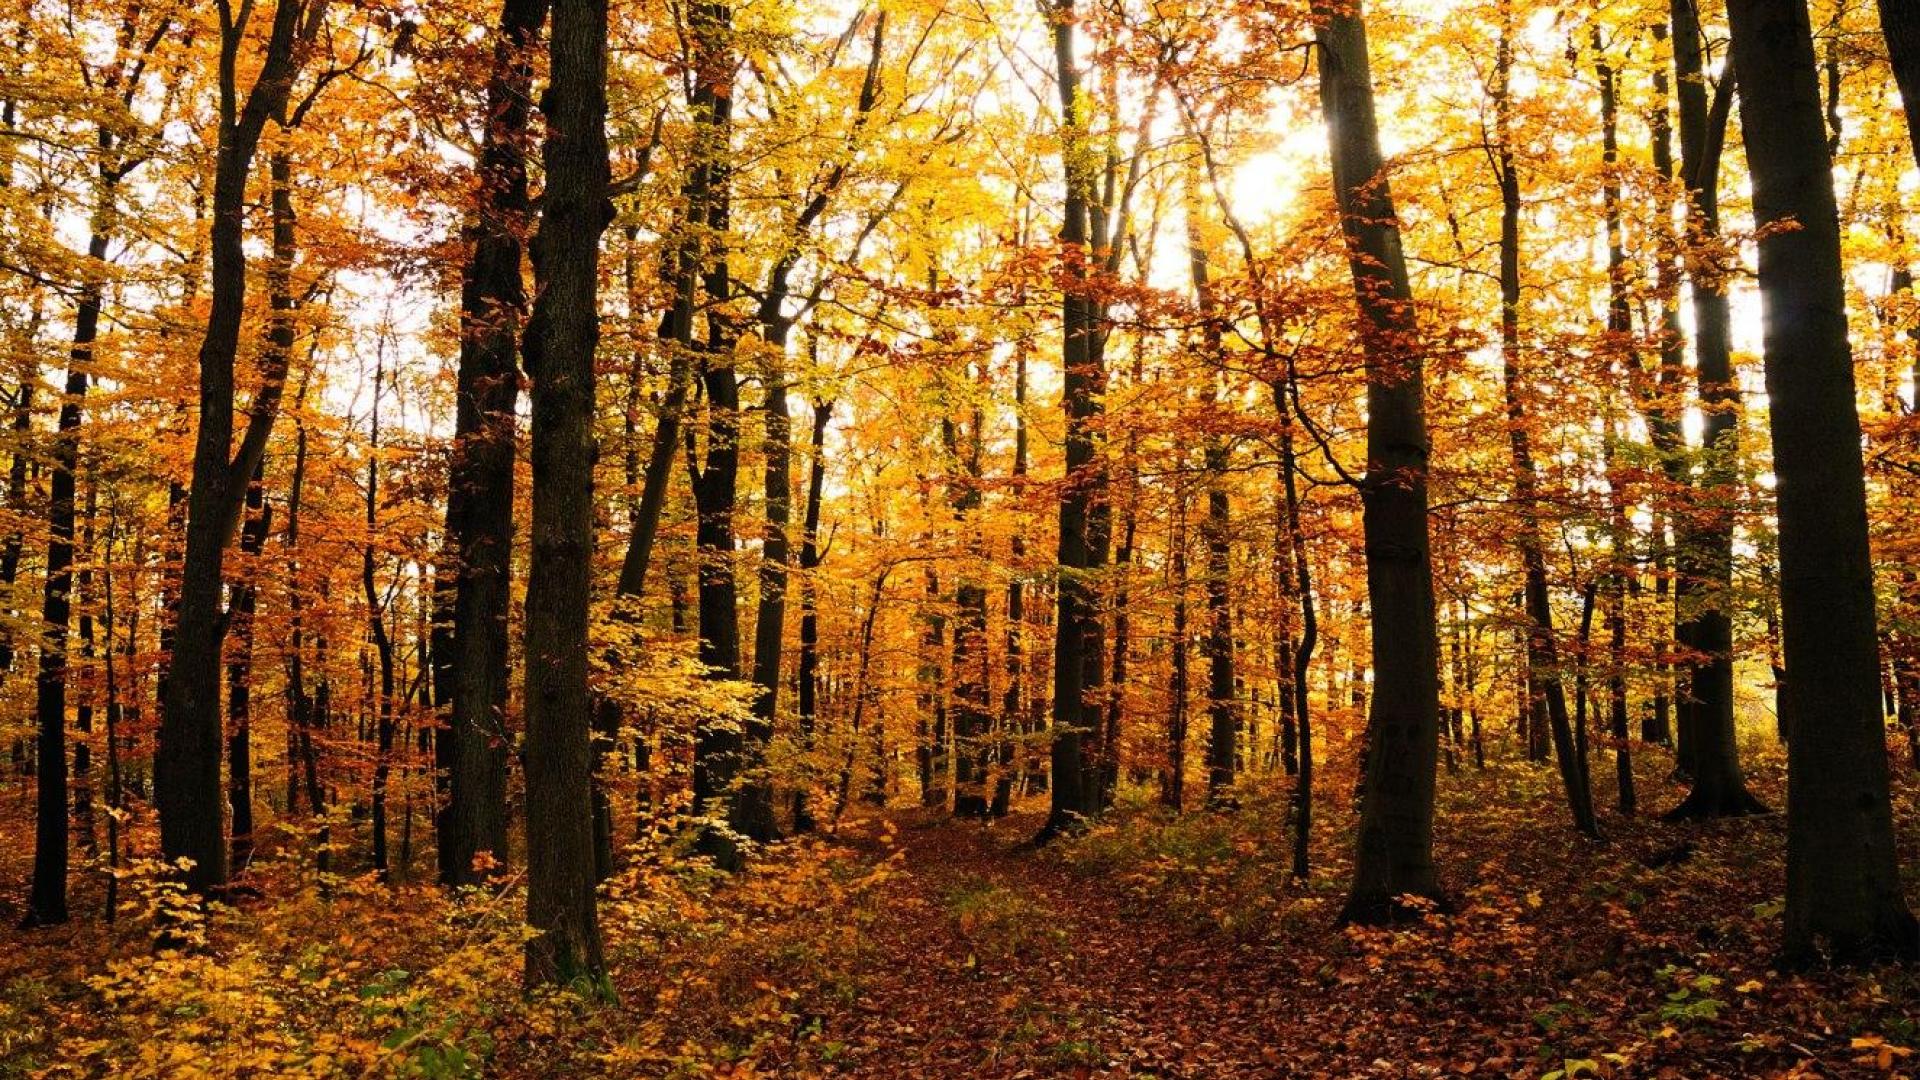 Autumn in the woods wallpaper - - HQ Desktop Wallpapers